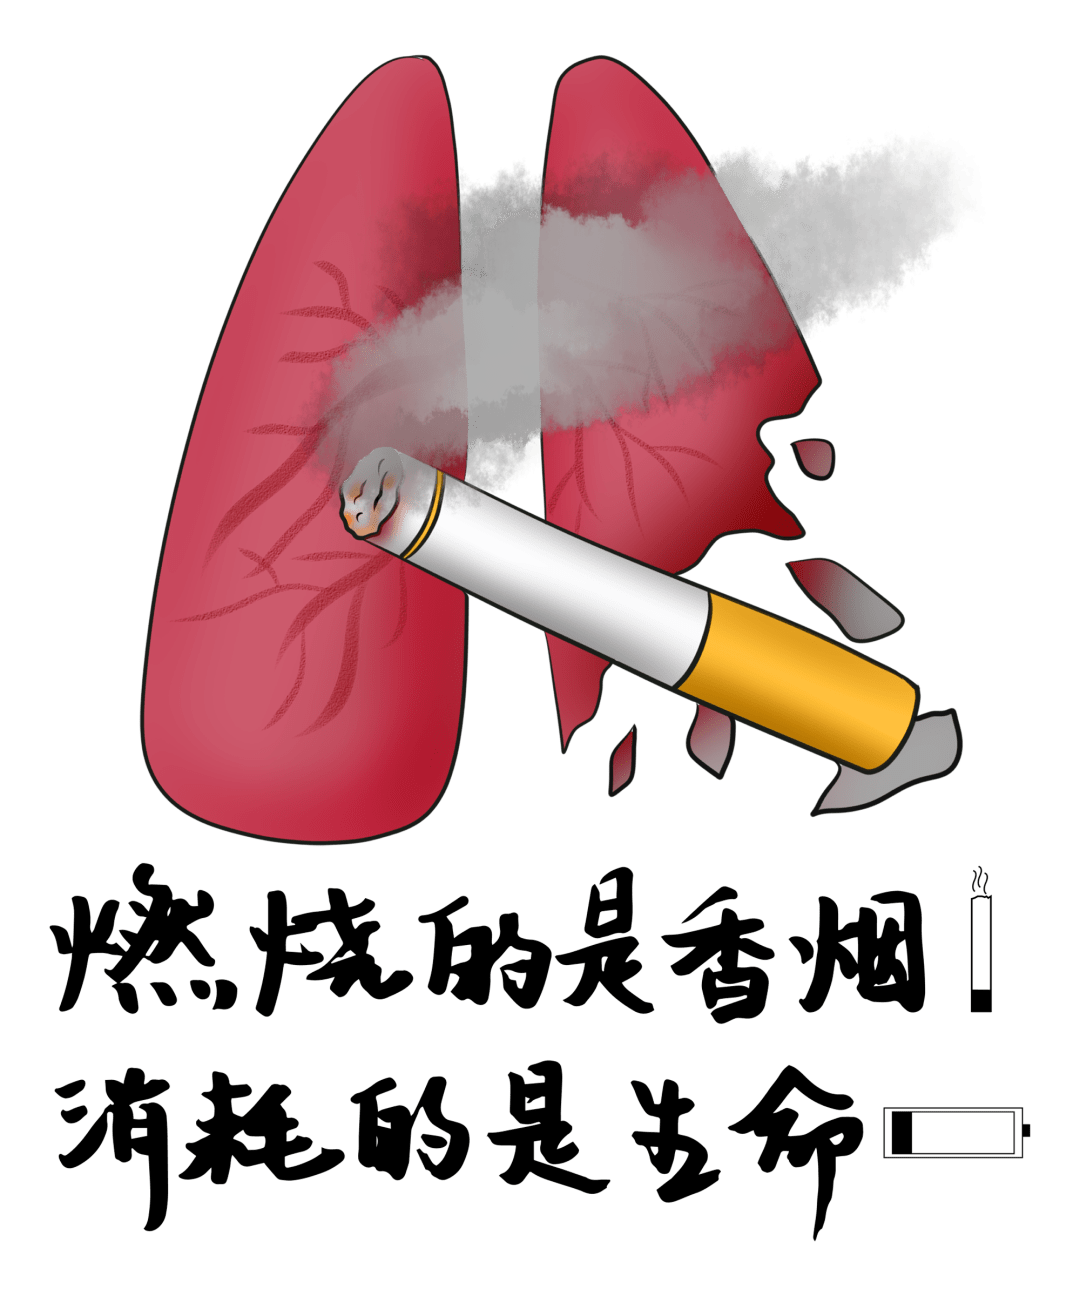 吸烟有害健康图片素材-编号38537020-图行天下